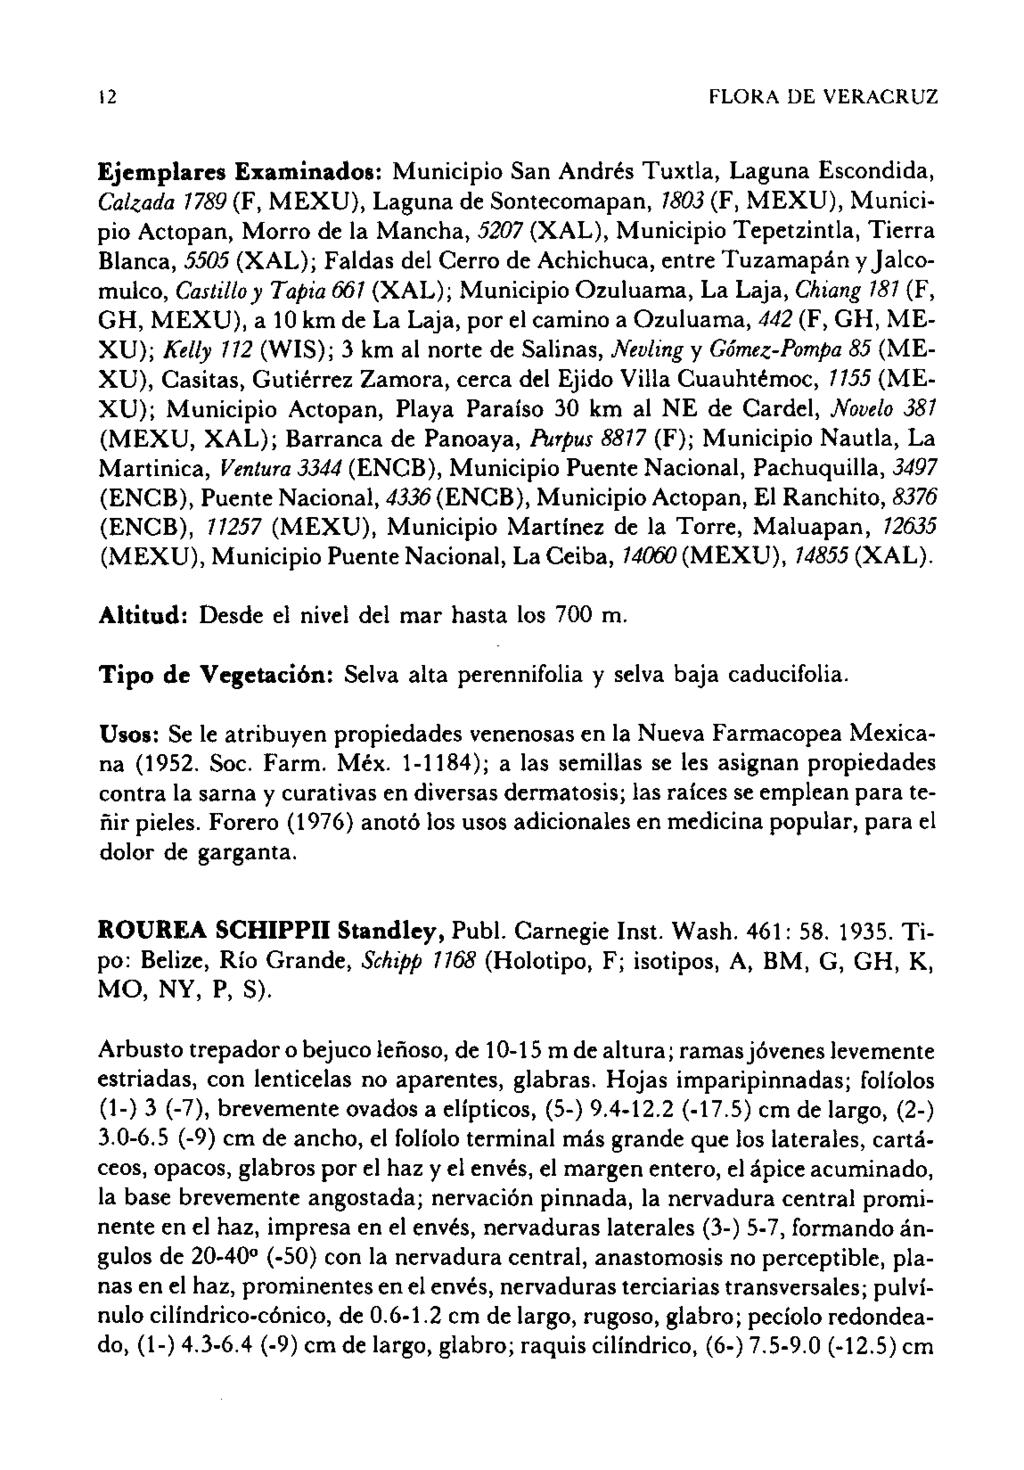 12 FLORA DE VERACRUZ Ejemplares Examinados: Municipio San Andrés Tuxtla, Laguna Escondida, Cal~ada 7789 (F, MEXU), Laguna de Sontecomapan, 7803 (F, MEXU), Municipio Actopan, Morro de la Mancha, 5207